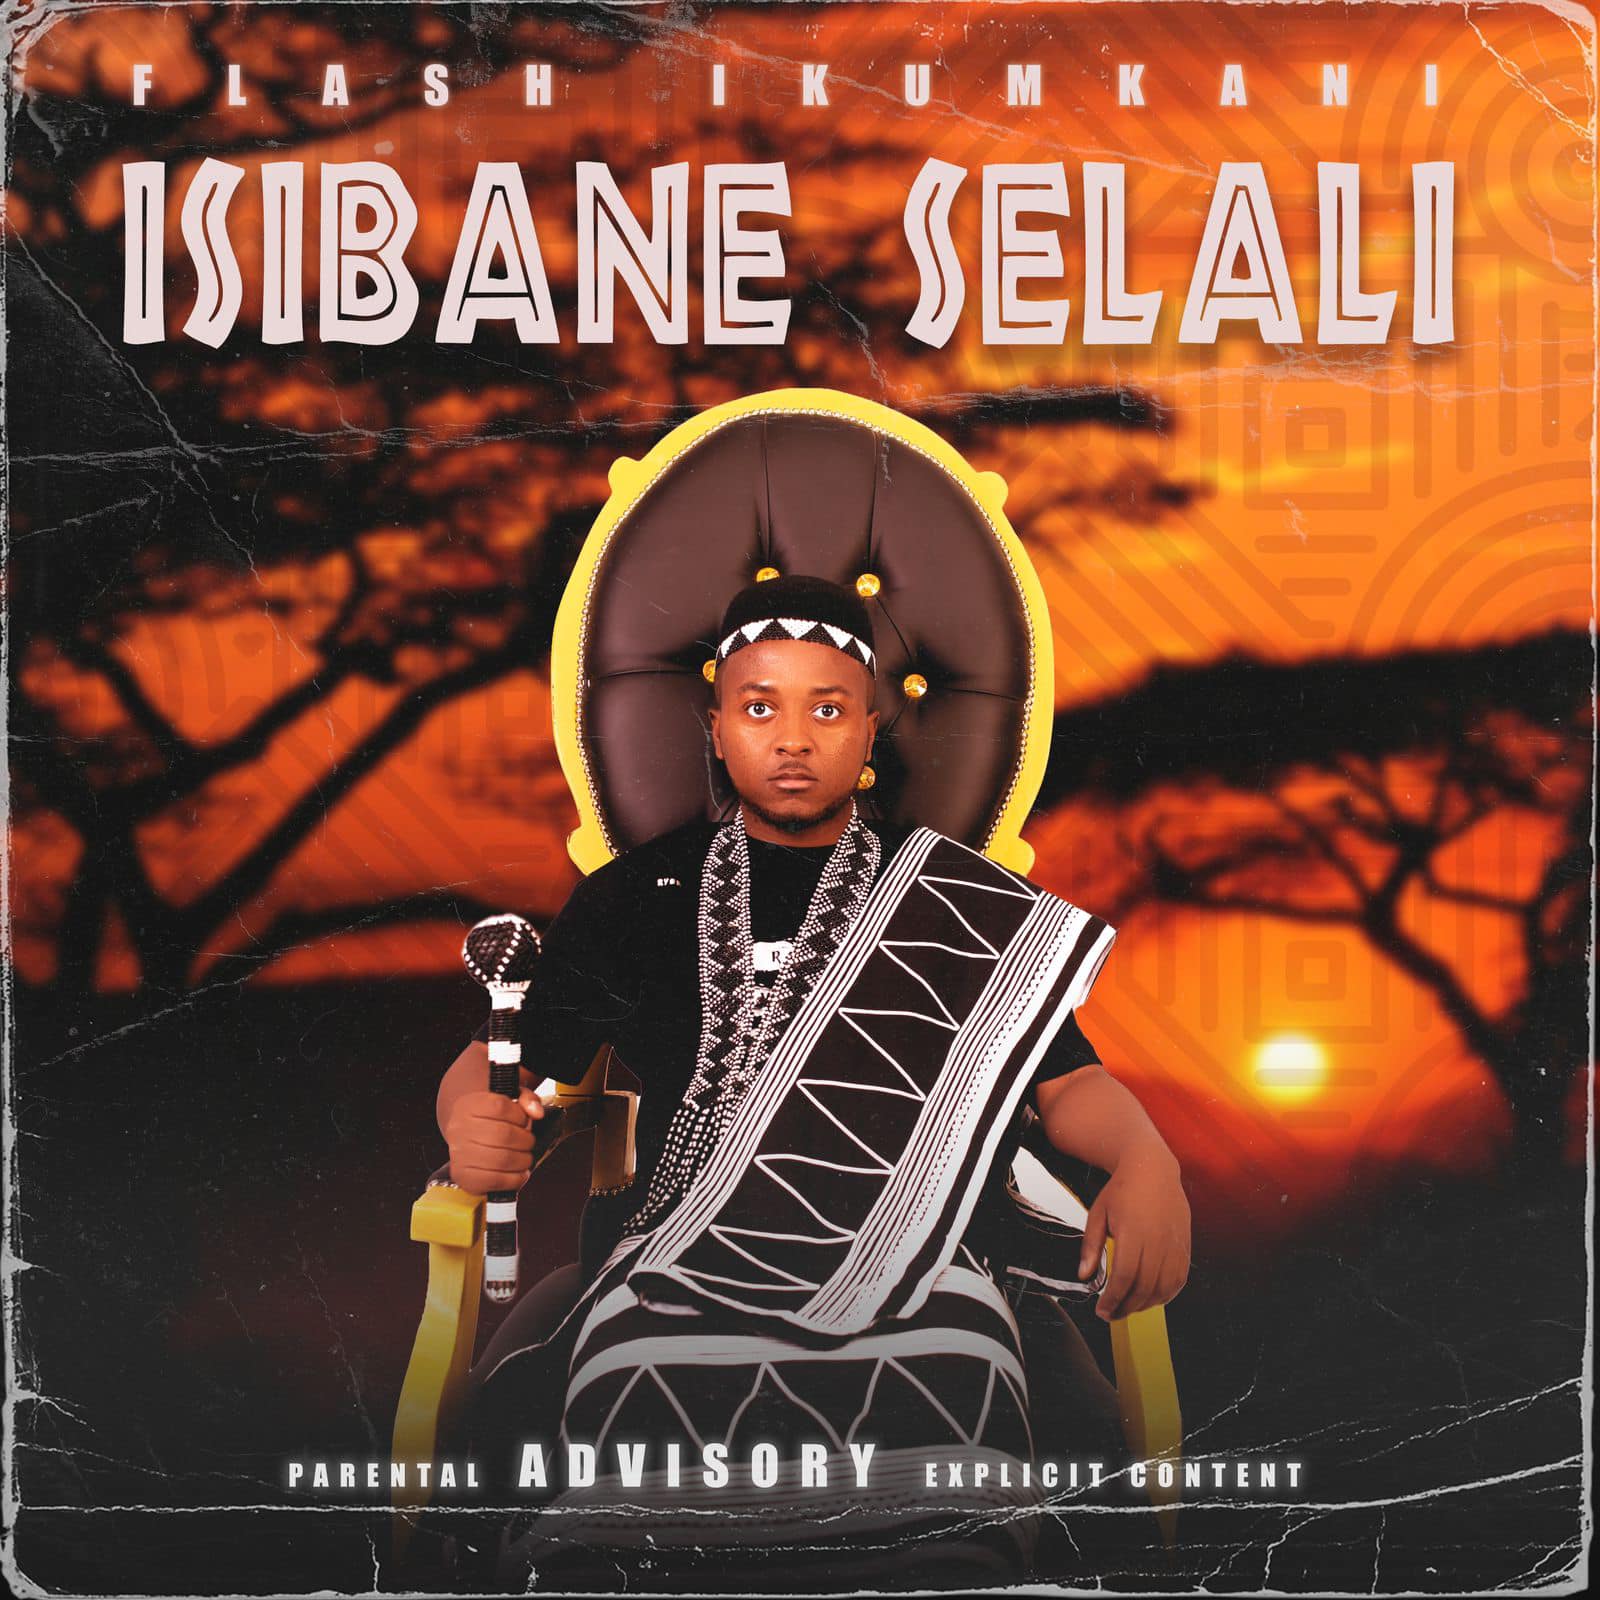 Isibane Selali by Flash Ikumkani | Album